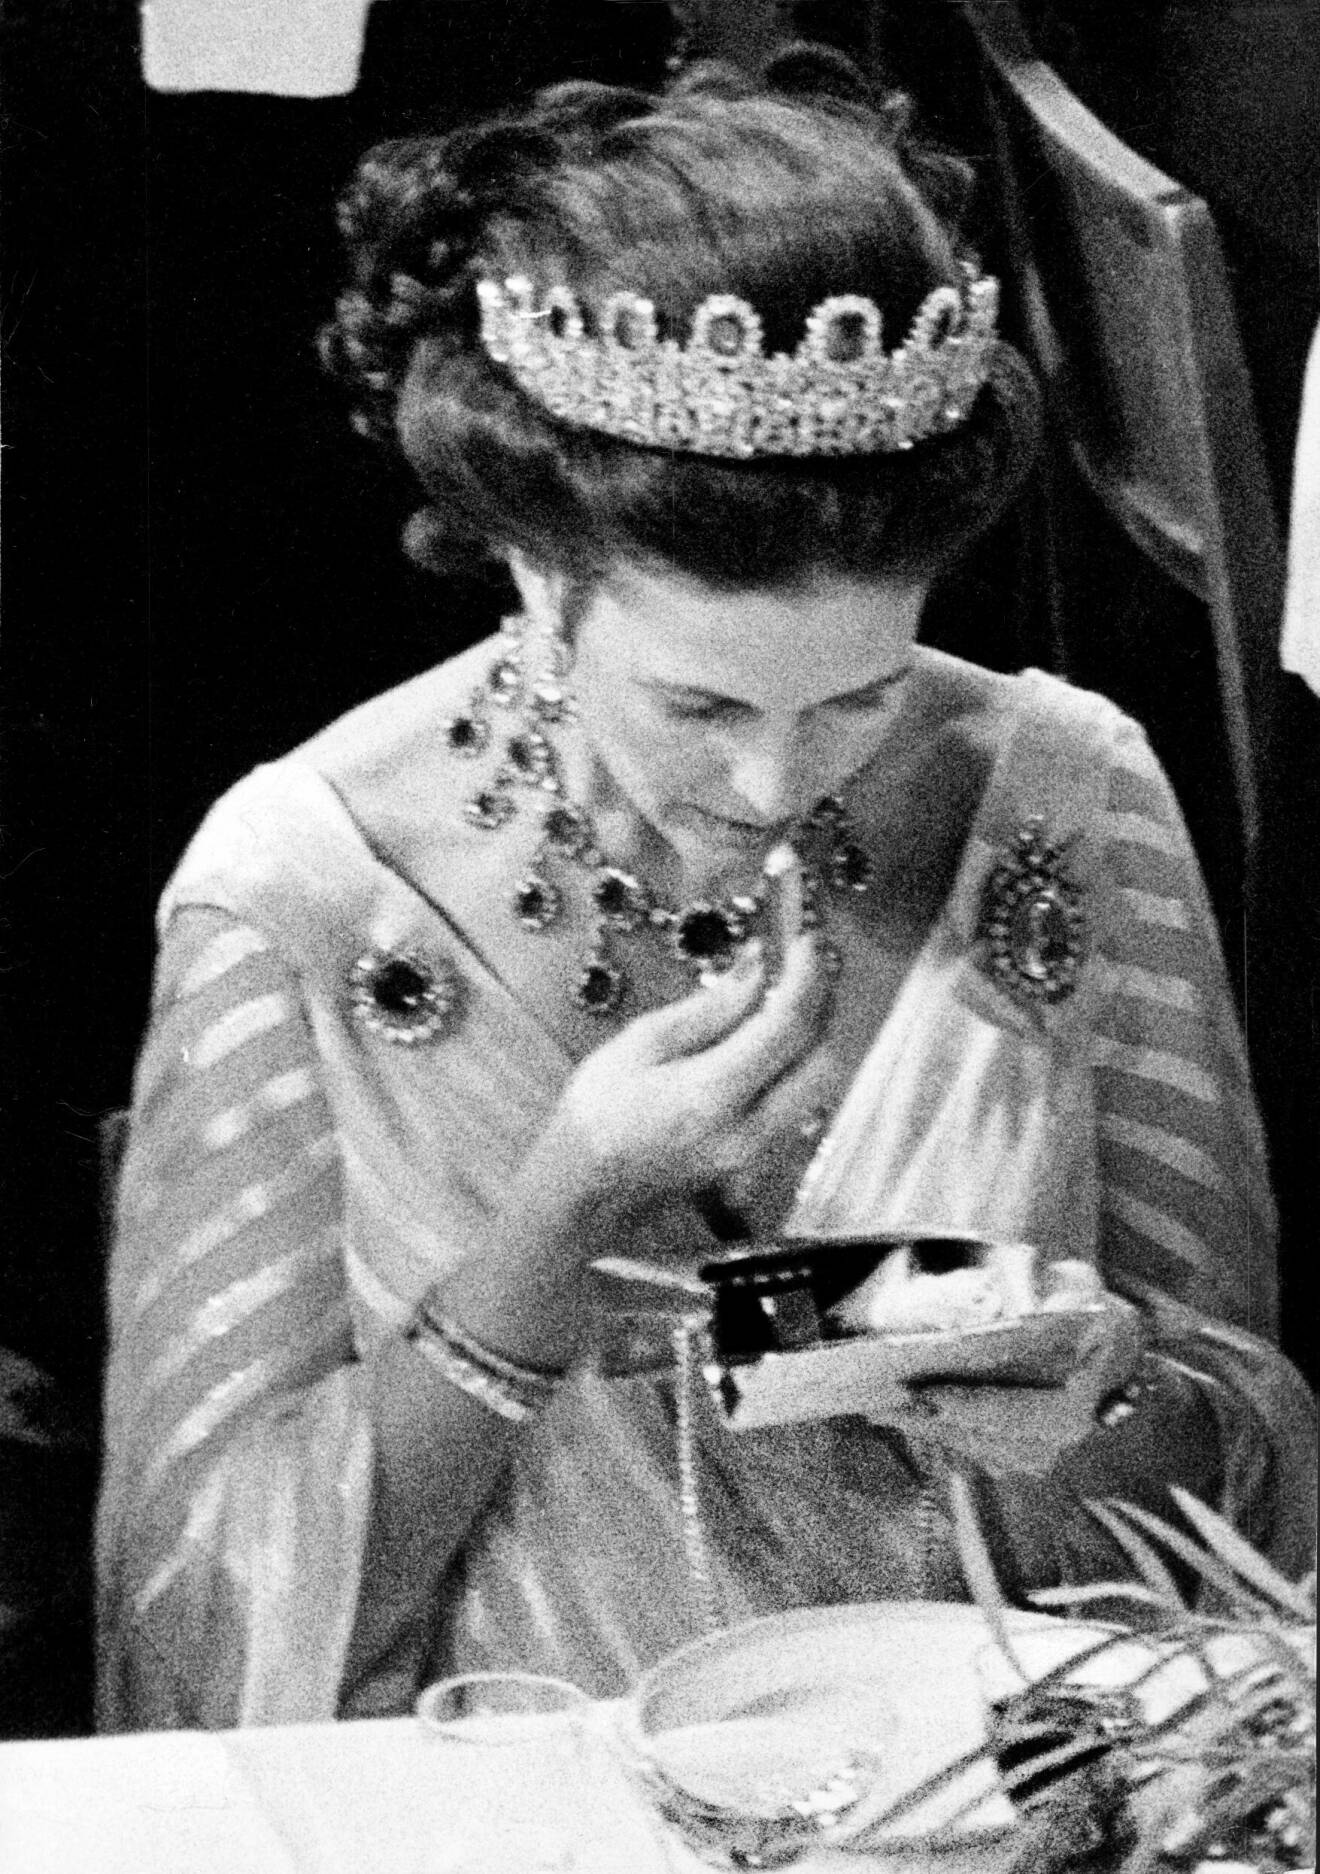 Silvia, drottning Sverige. Nobelfesten 1981. Drottningen smyger upp ett läppstift och en sminkspegel och bättrar på sminket, ett etikettsbrott under middagen